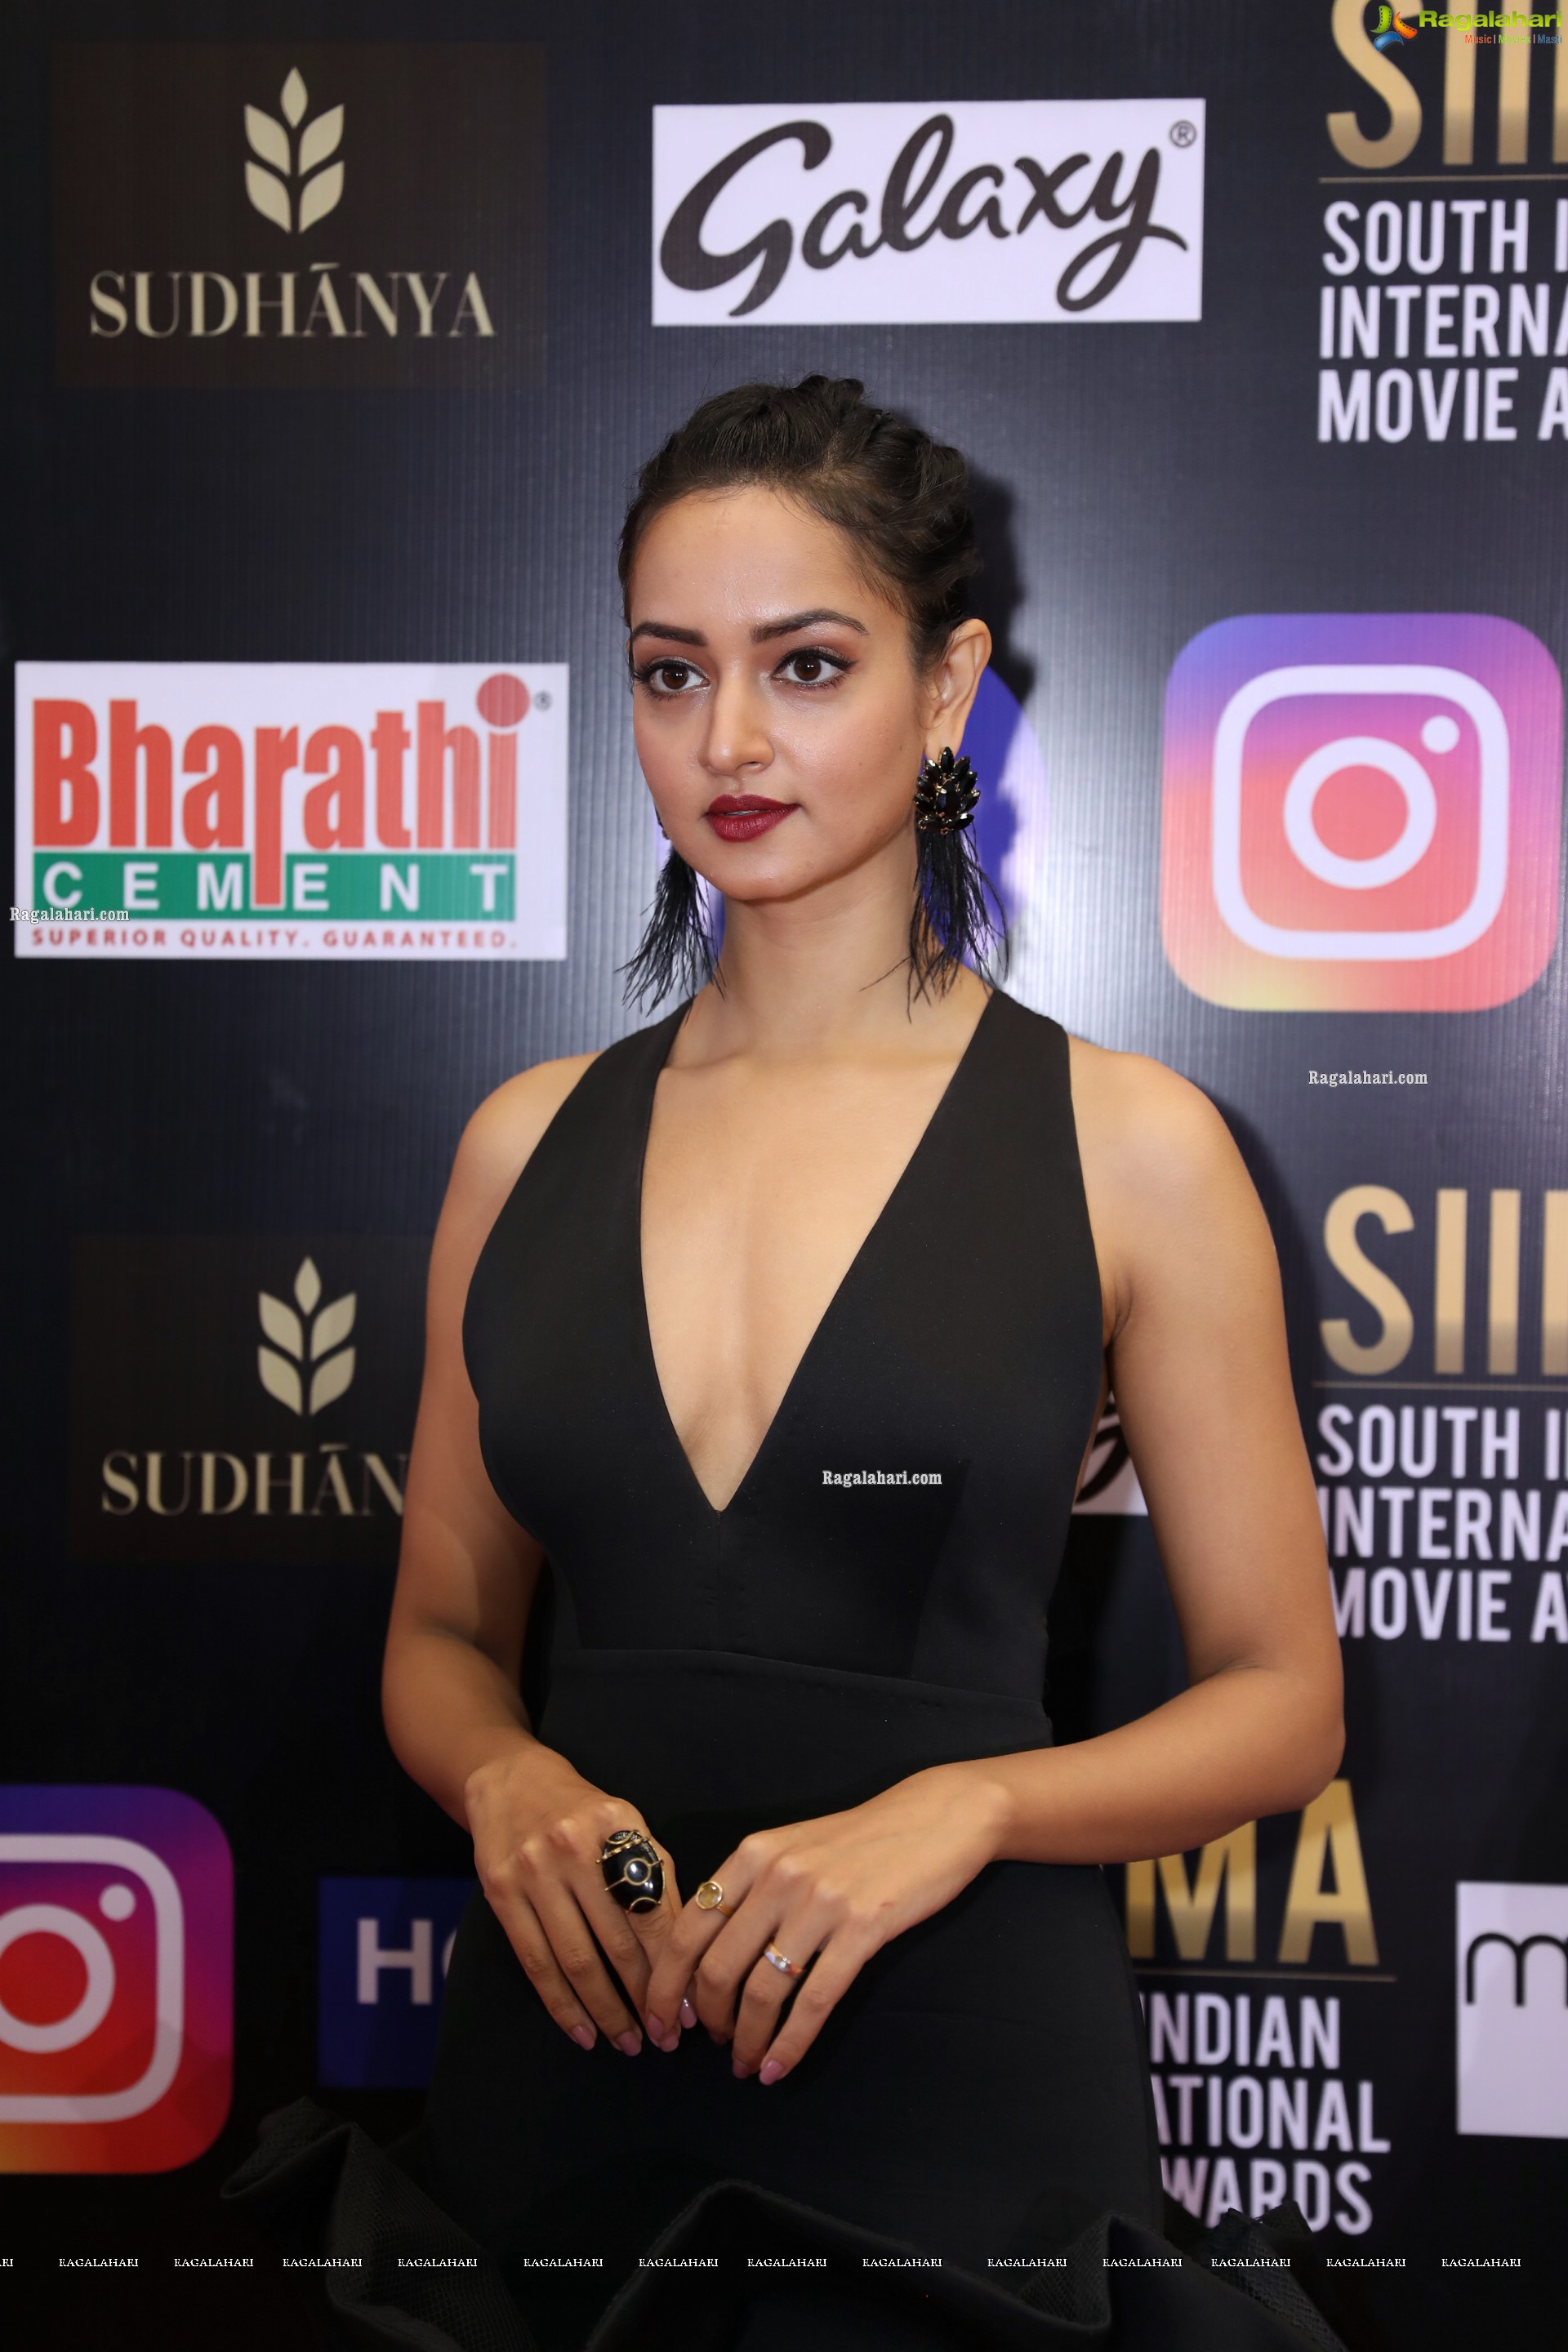 Shanvi Srivastava At SIIMA Awards 2021 Day 2, HD Photo Gallery